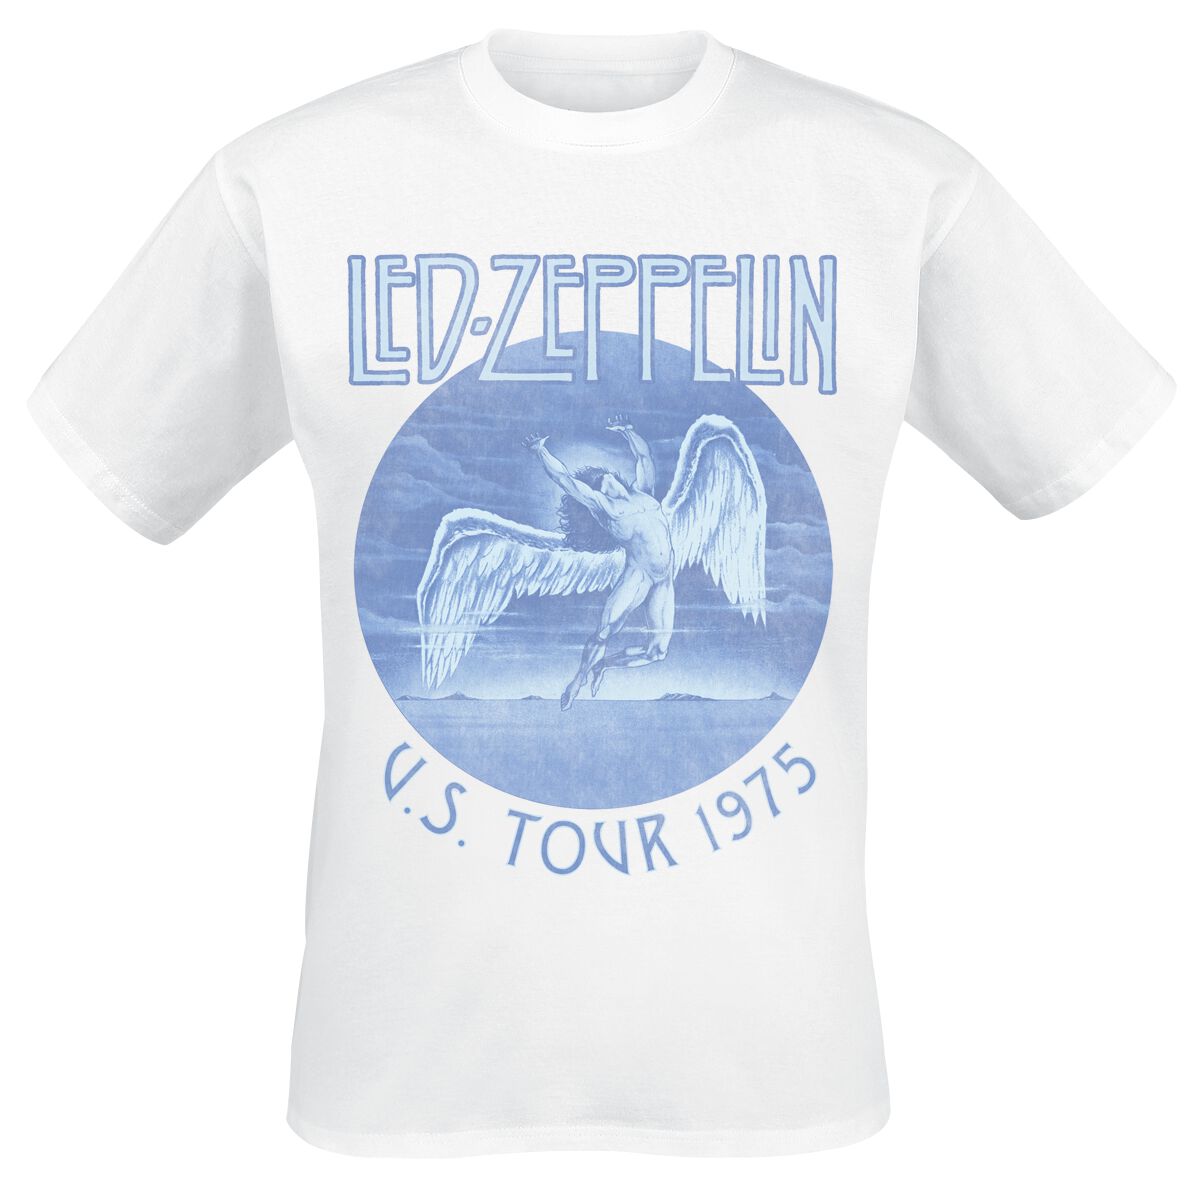 Led Zeppelin T-Shirt - Tour 75 - S bis XXL - für Männer - Größe S - weiß  - Lizenziertes Merchandise!